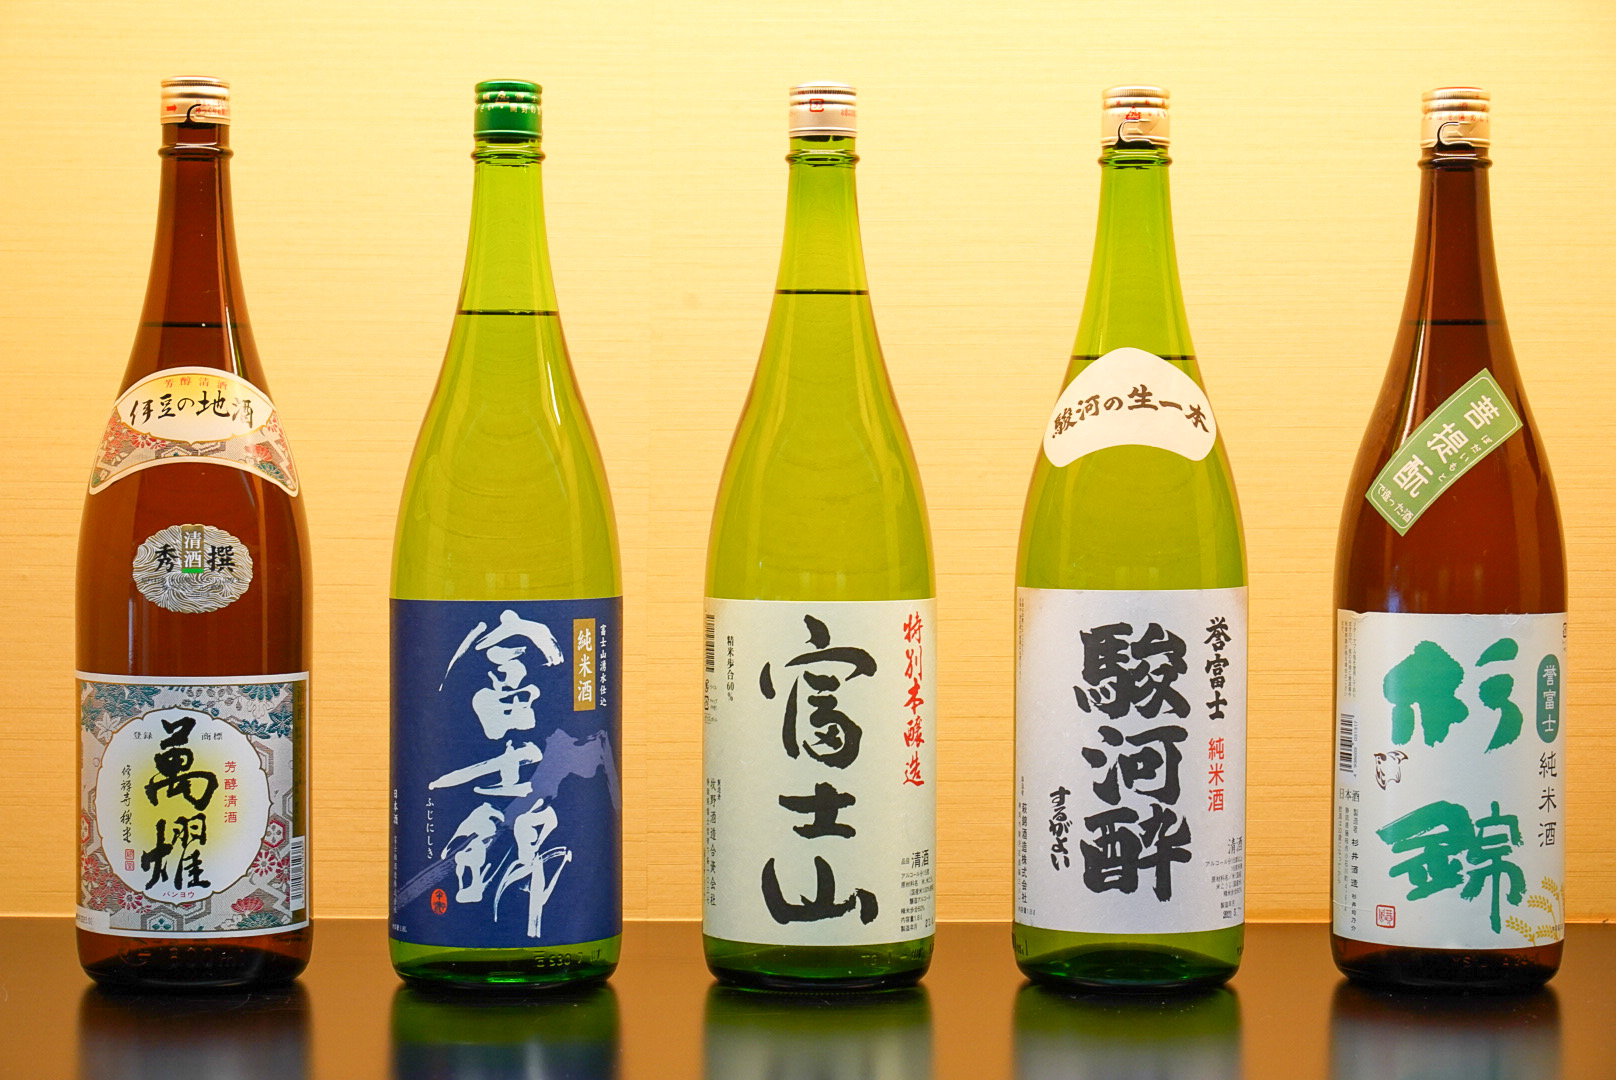 新しく仲間入りした地酒5点。 左から、「伊豆地酒 萬燿」、「富士錦 純米青ラベル」、「富士山 特別本醸造」、「駿河酔 誉富士純米」、「杉錦 誉富士純米」。